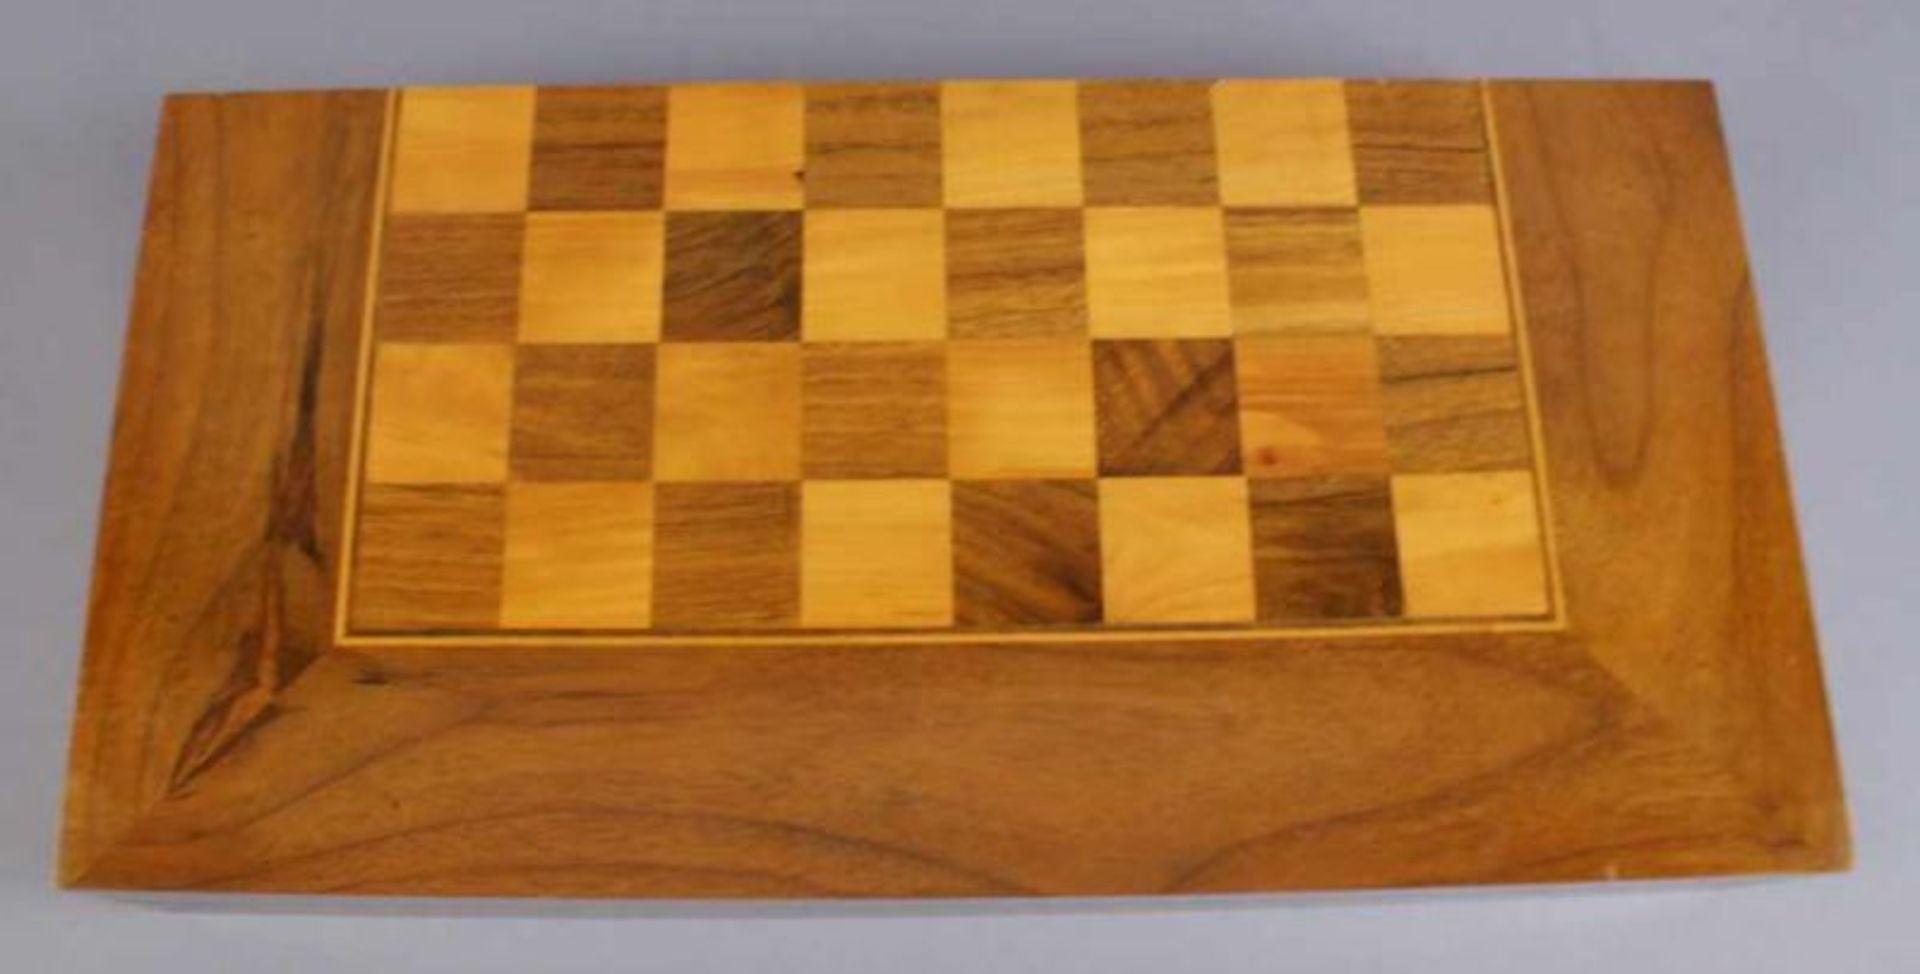 Schach / Backgammon, verschiedene Edelhölzer, 49x49 cm 20.17 % buyer's premium on the hammer price - Bild 2 aus 4